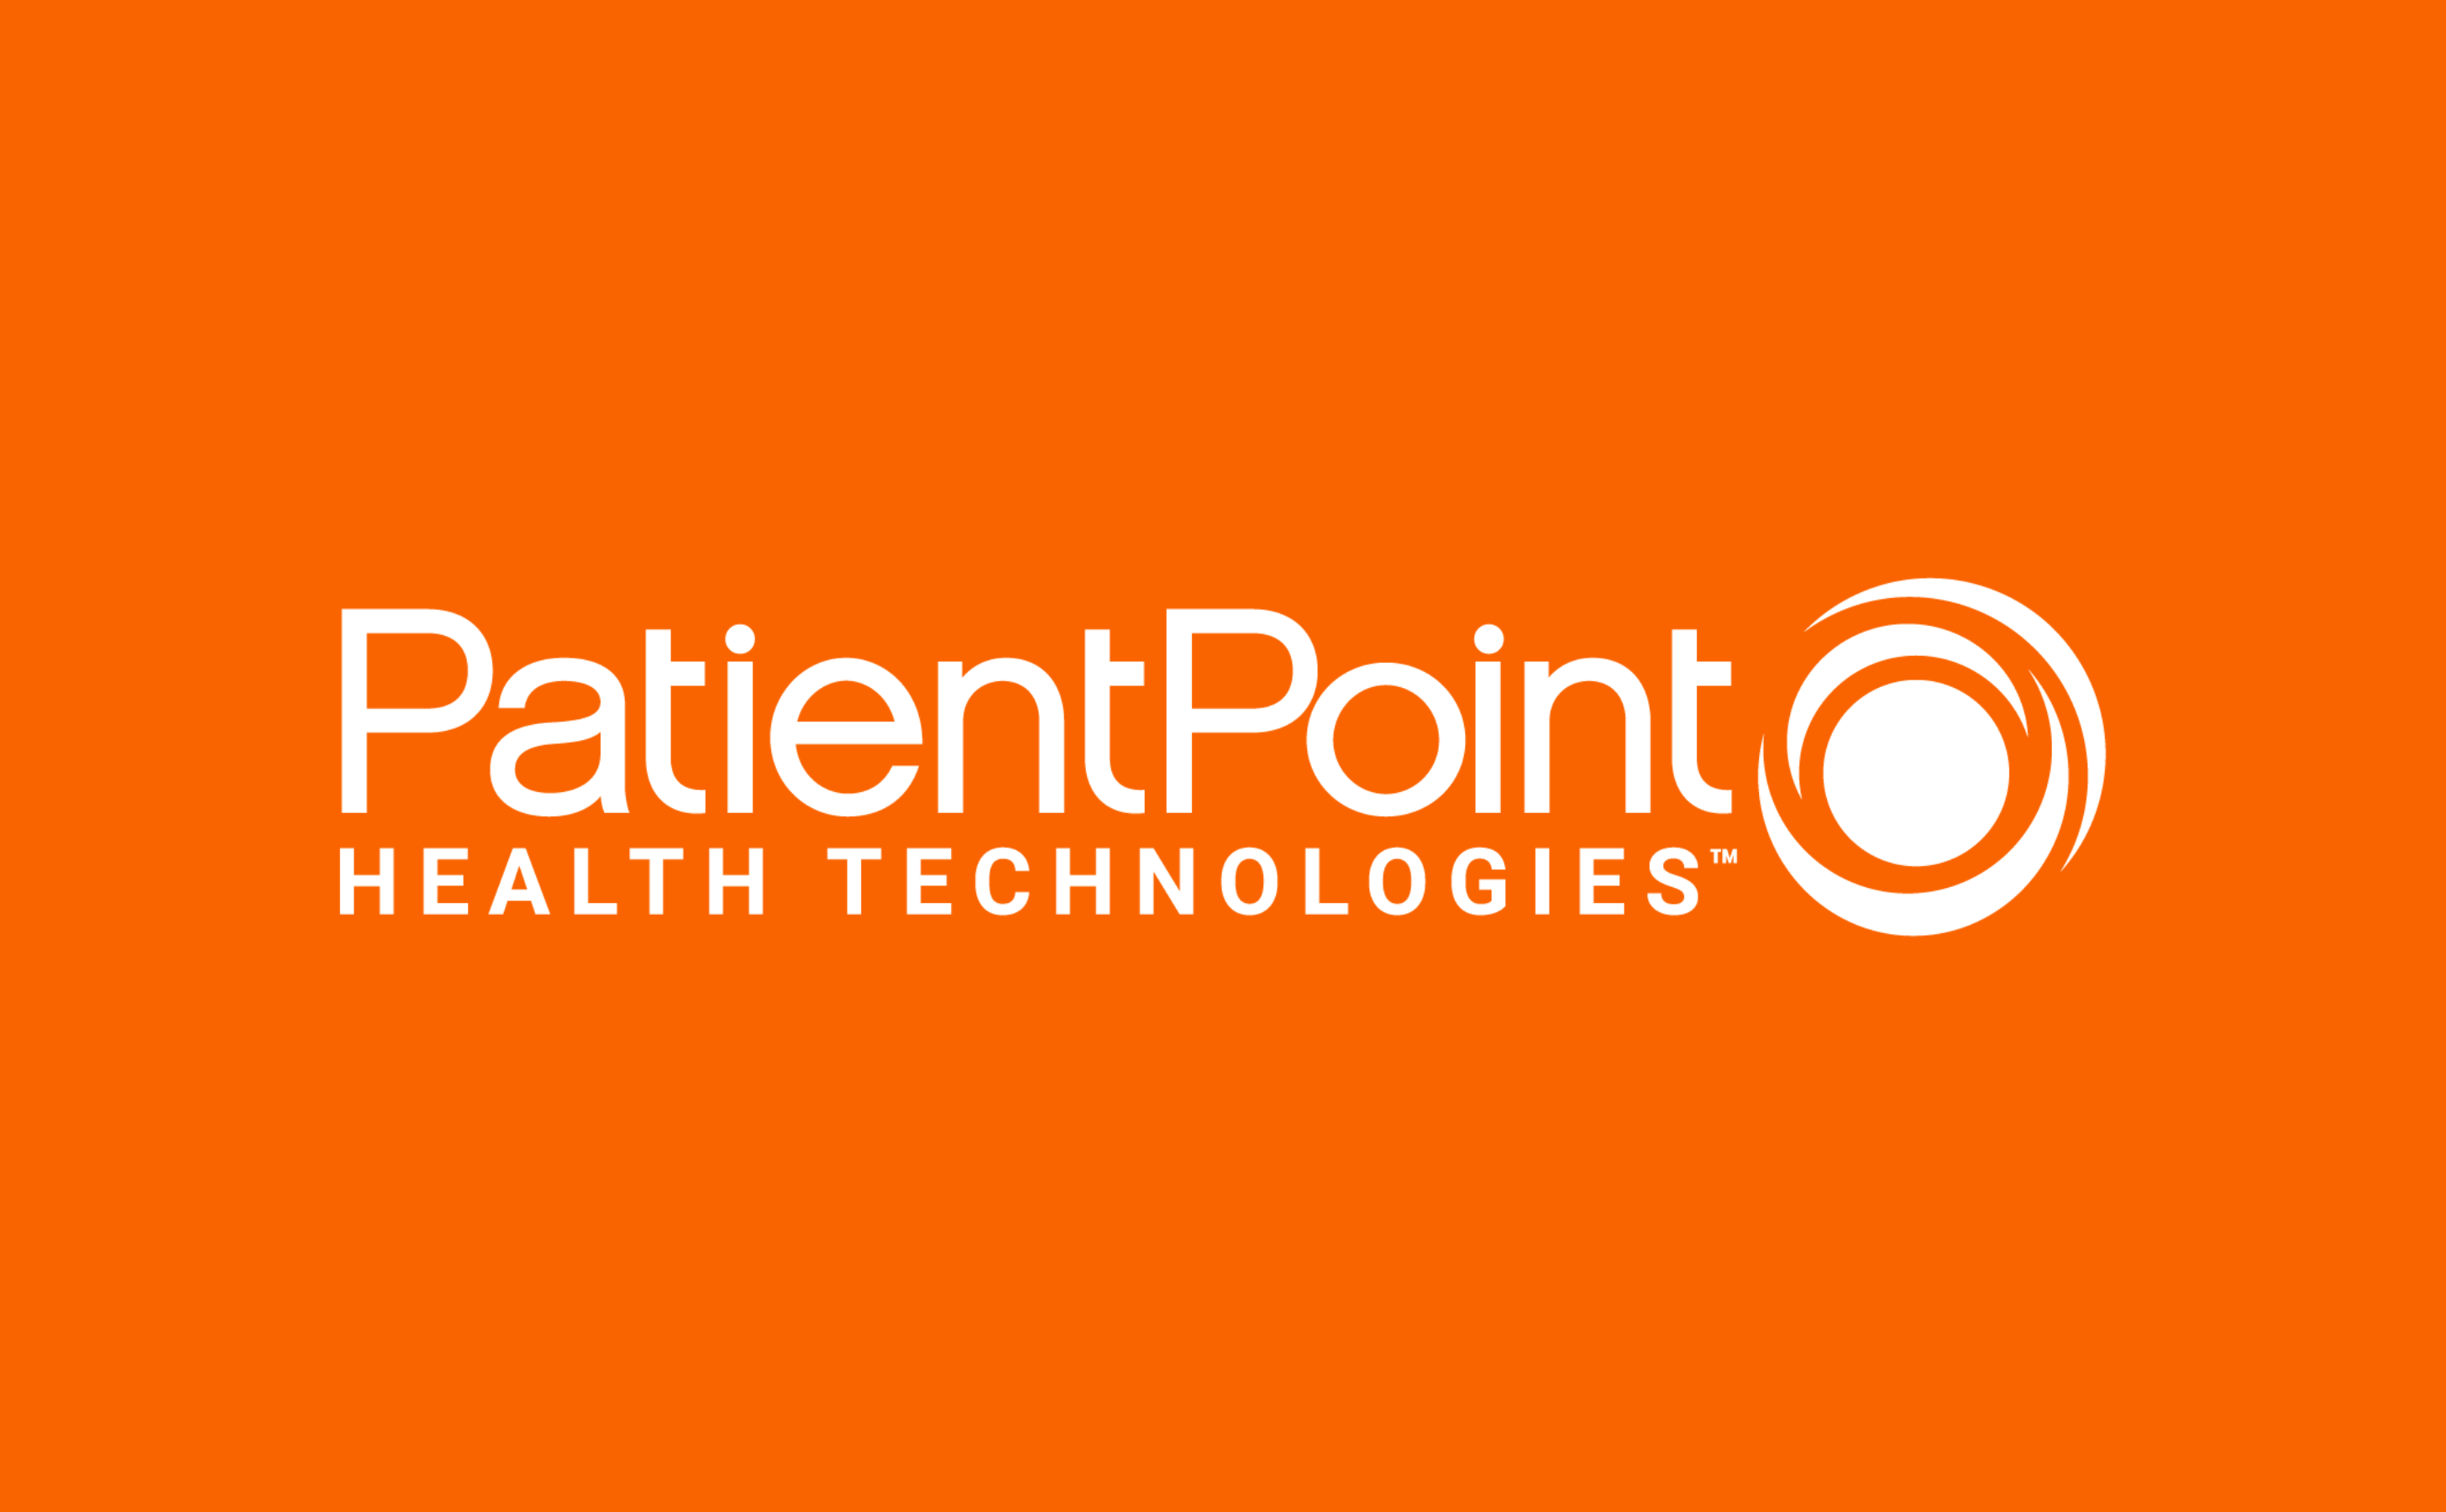 PatientPoint Health Technologies on orange background.